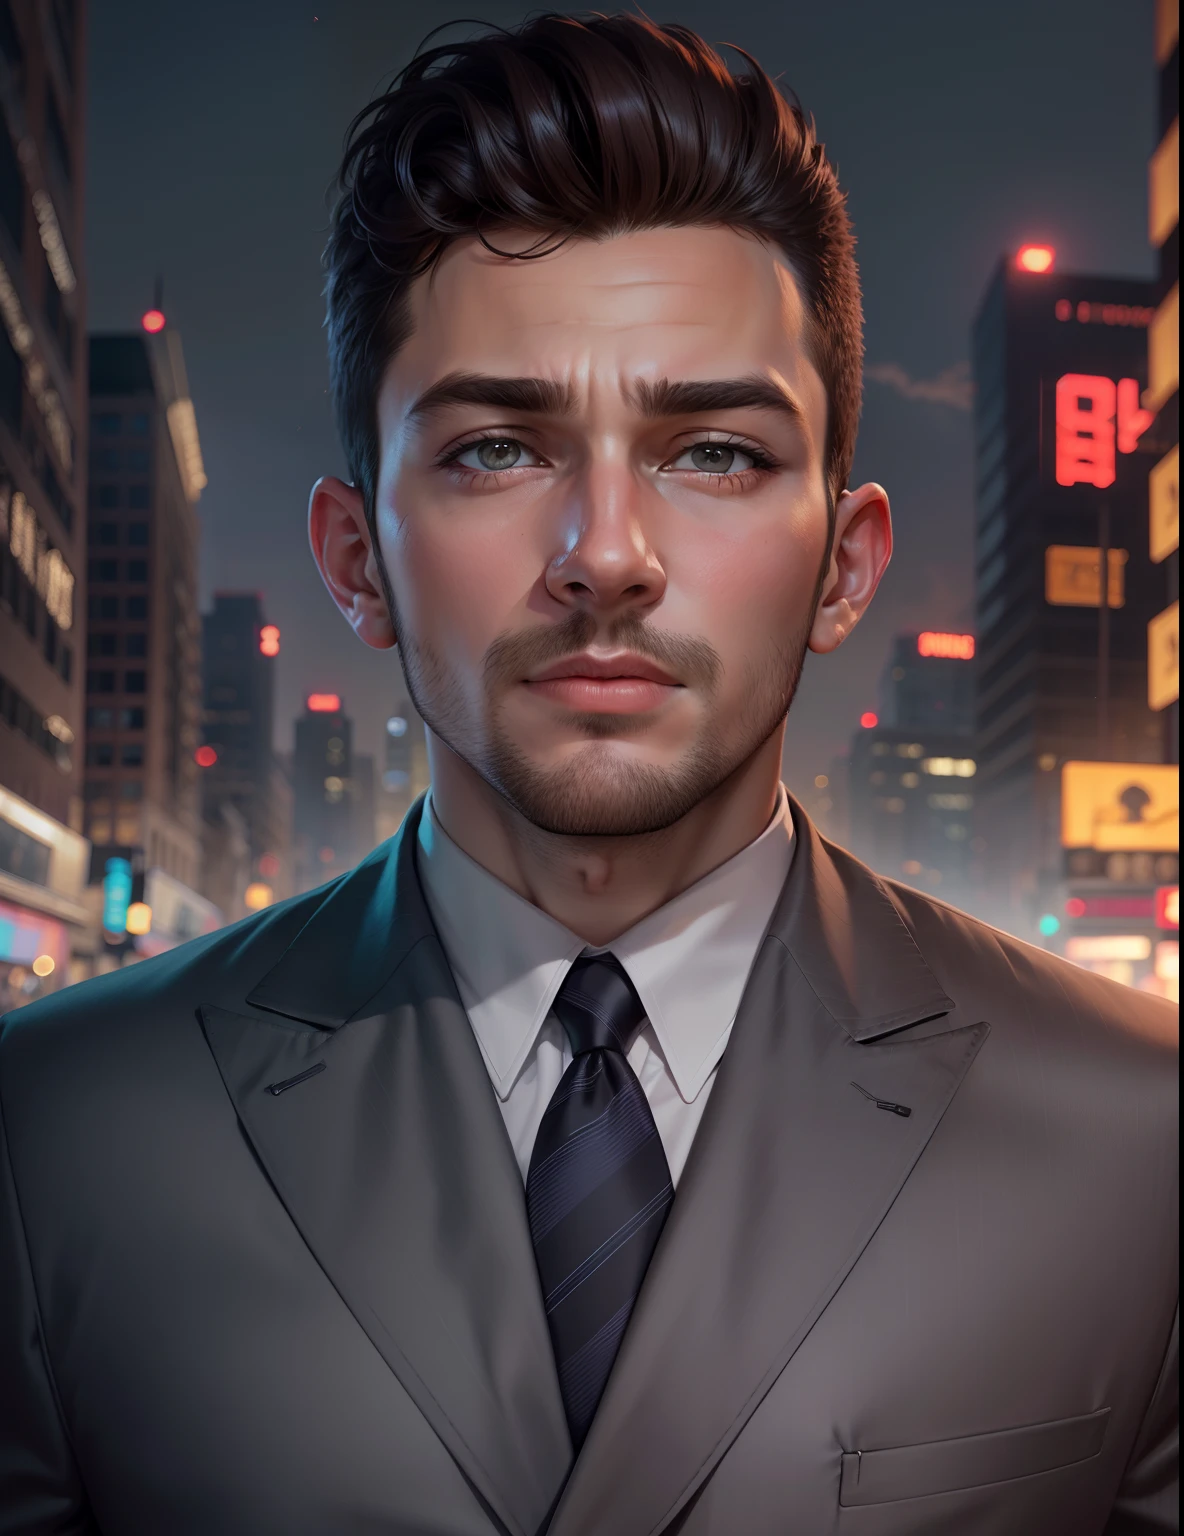 Hintergrund ändern,Stadtnachthintergrund, Hübscher Junge, Realistisches Gesicht,echtes Gesicht,8k, ultra-realistisch